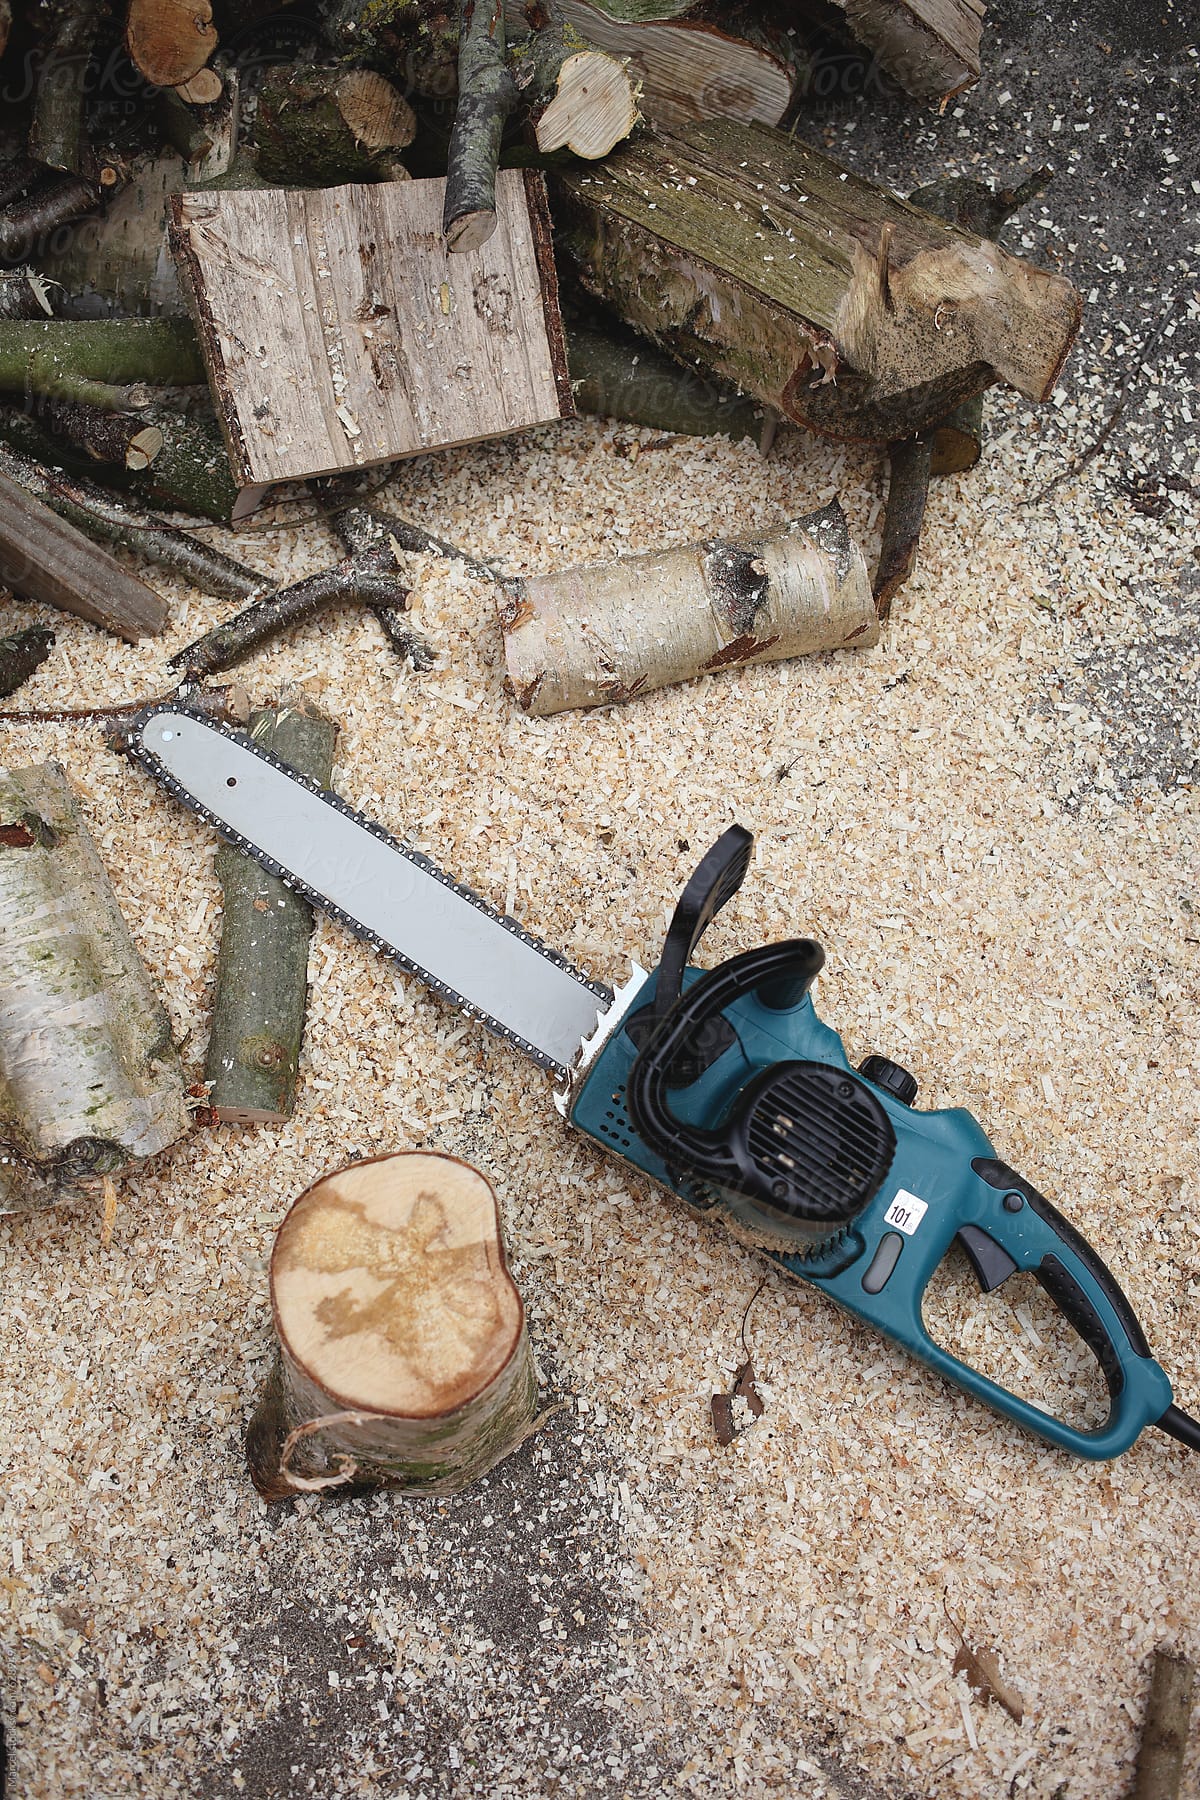 Chainsaw on sawdust